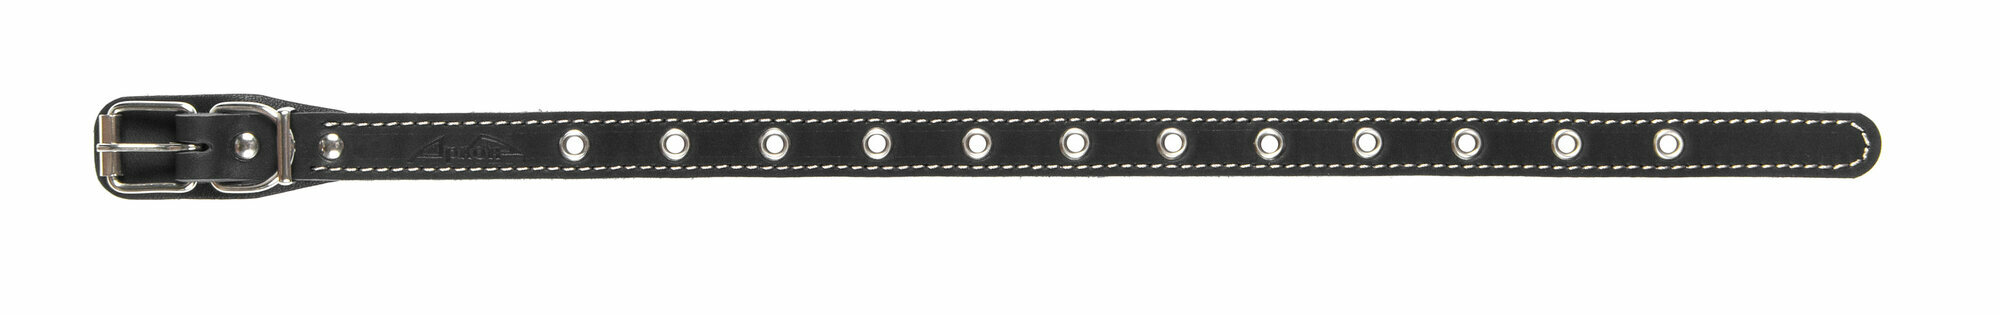 Ошейник аркон кожаный для собак универсальный черный (на обхват до 45 см/20 мм)